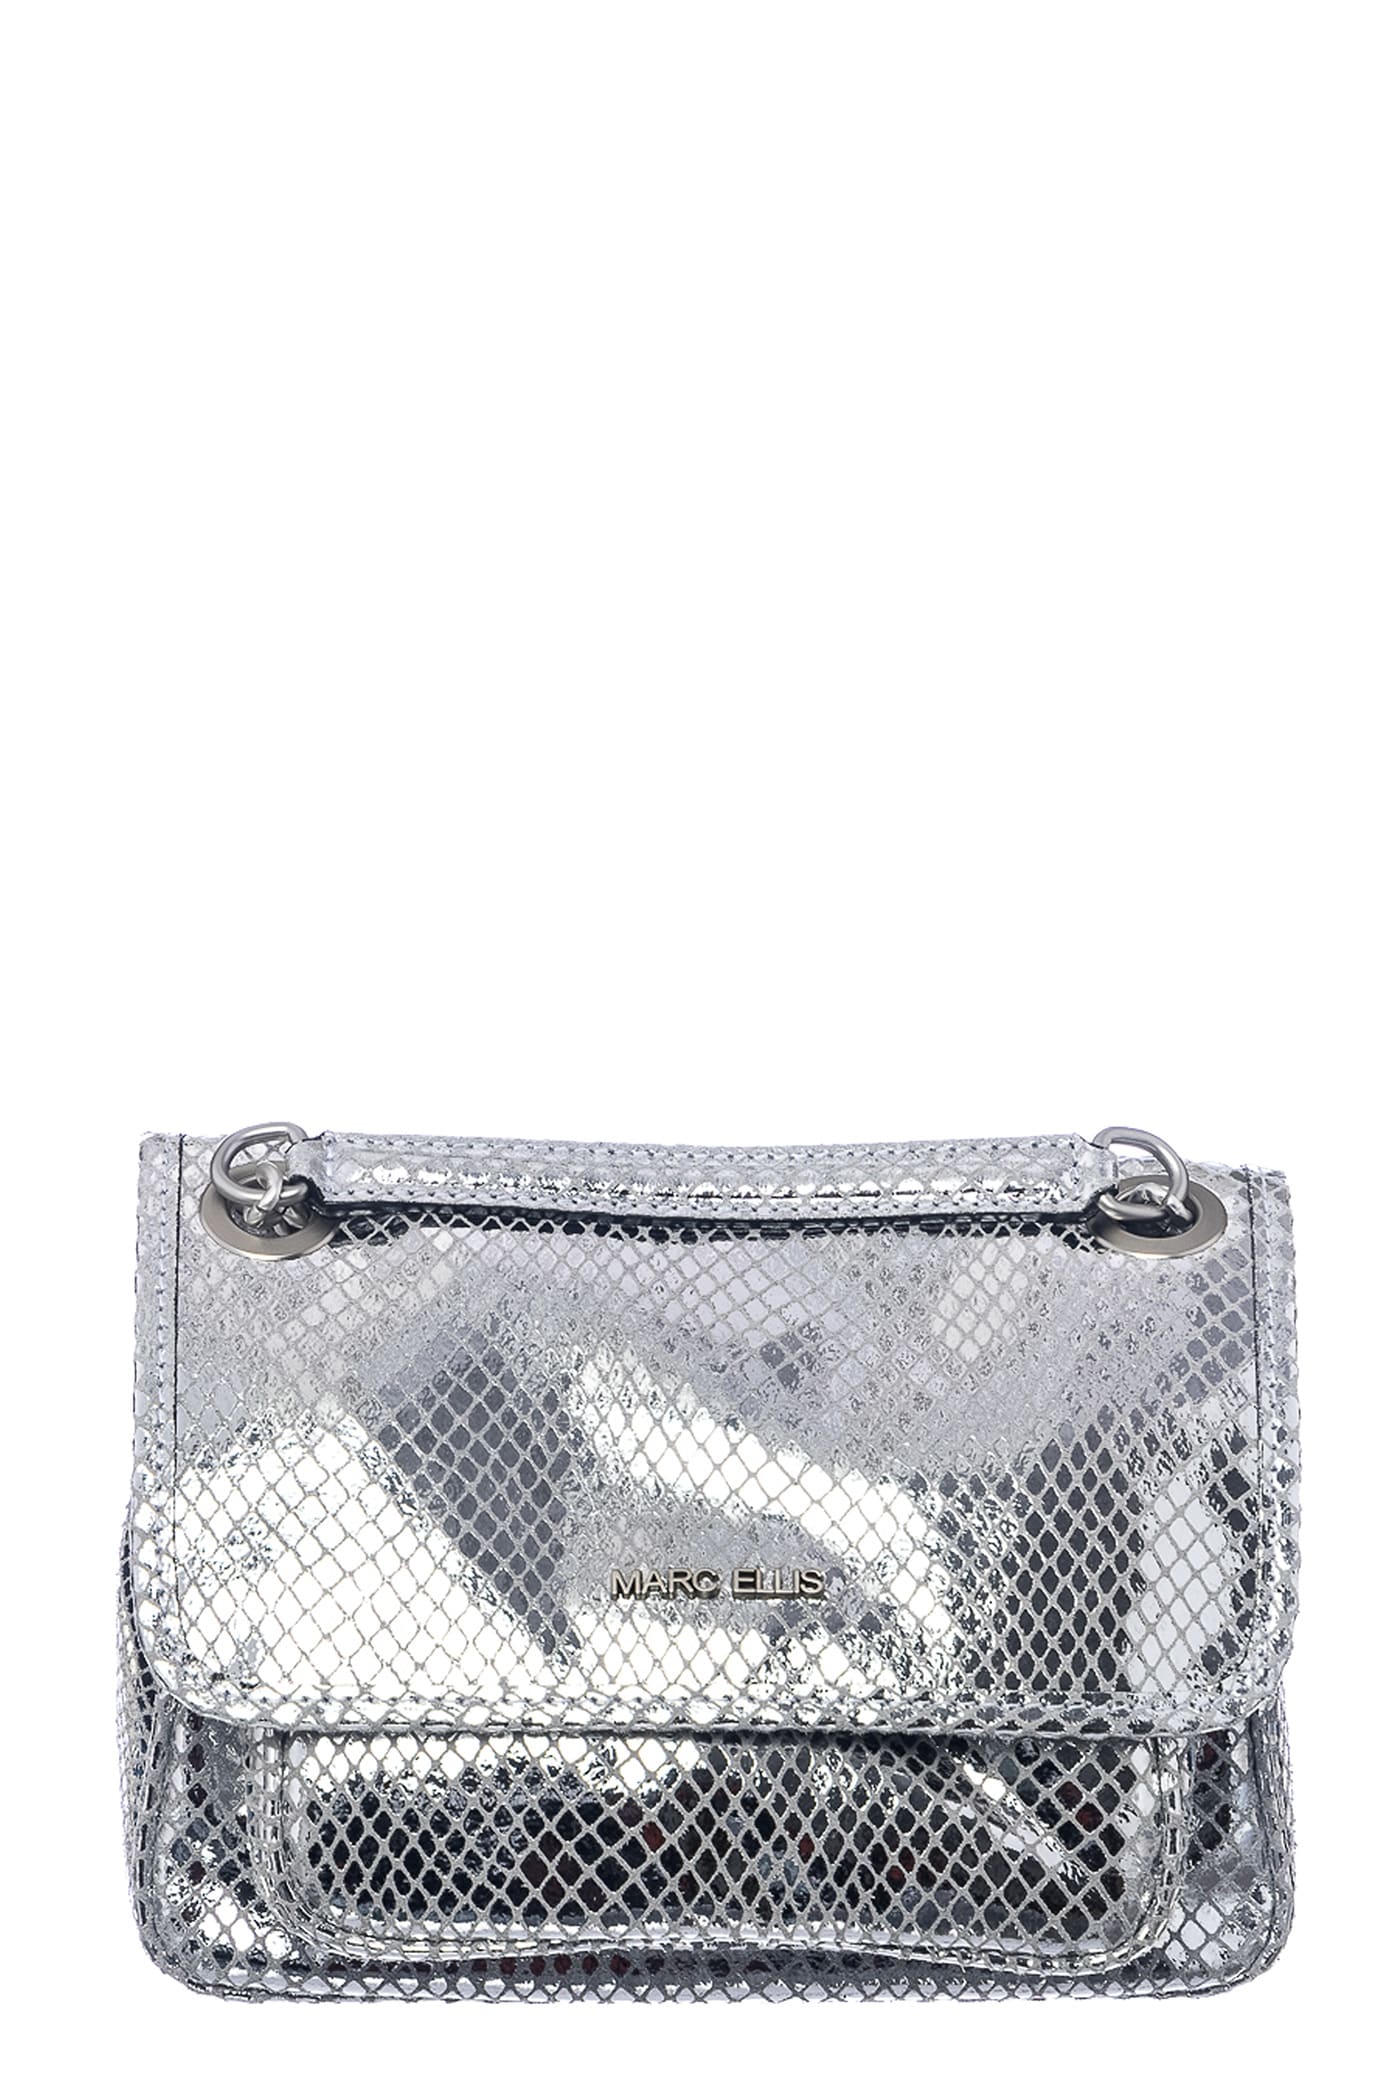 Marc Ellis Rhonda M Shoulder Bag In Silver Leather